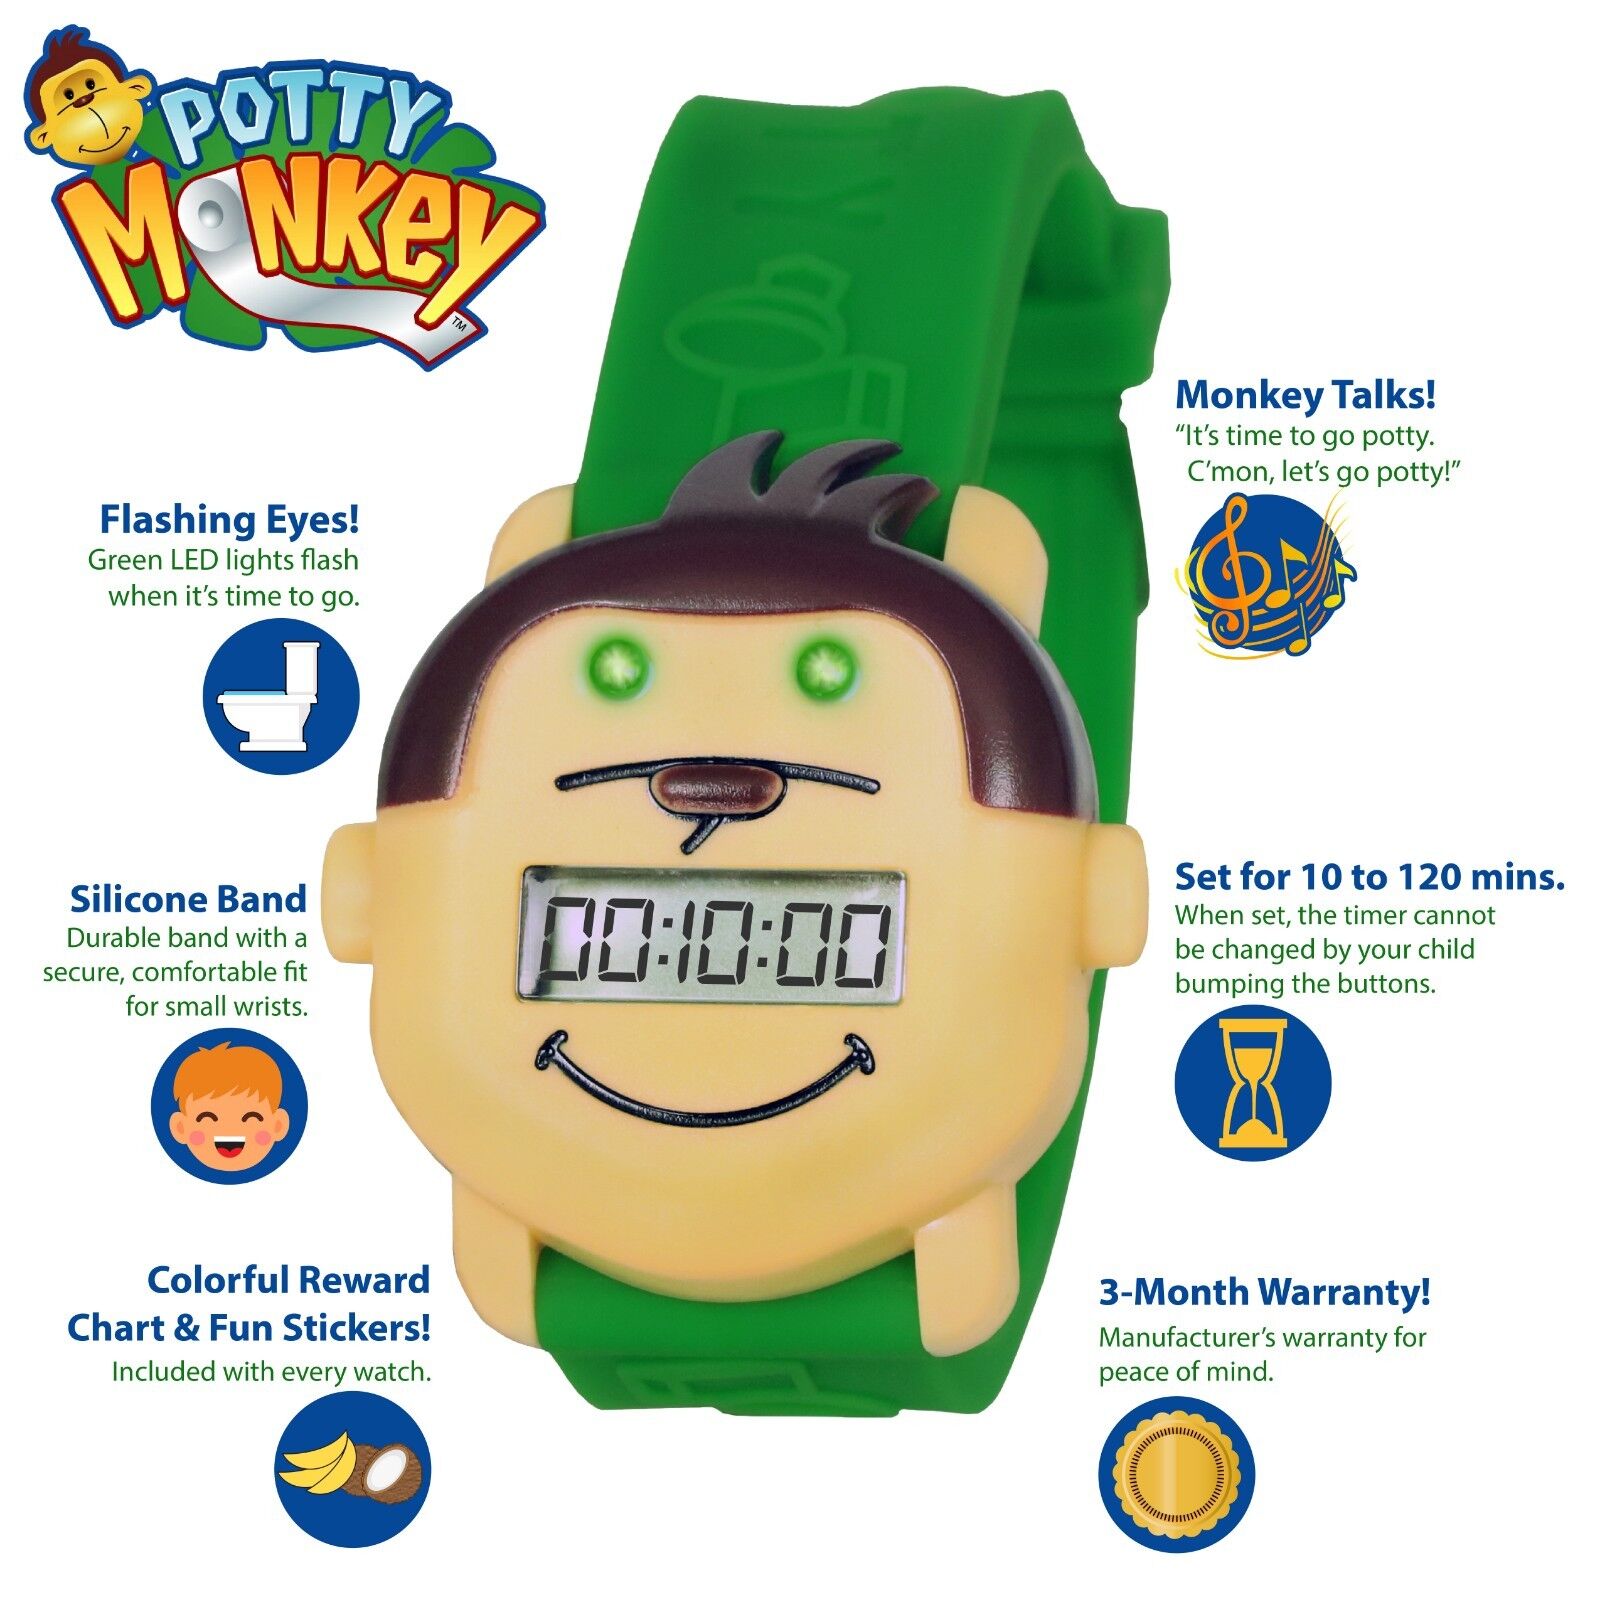 Potty Monkey Watch | Potty Training Reminder Watch w/ Colorful Fun Reward Chart Potty Monkey PMW - фотография #3